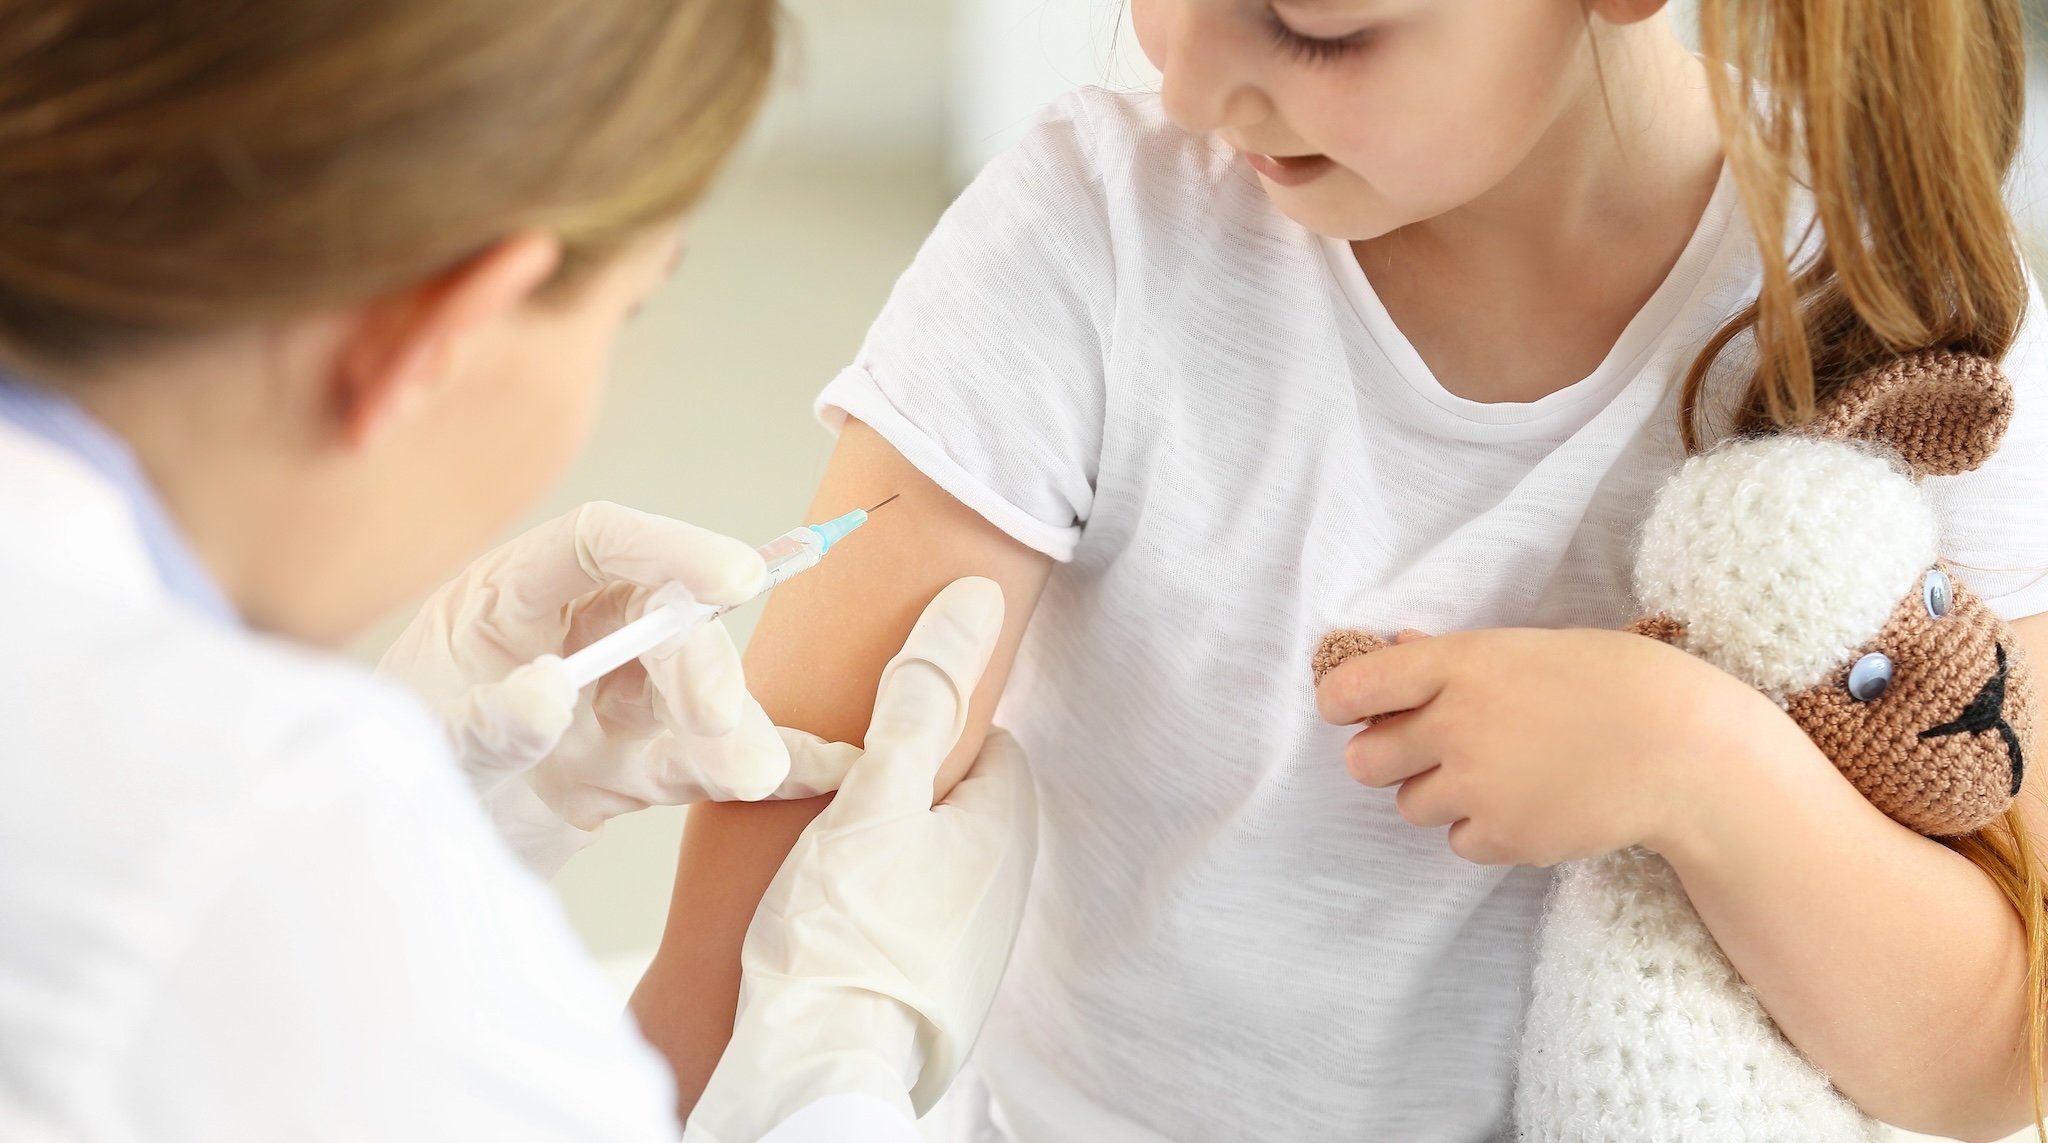 Ein Kind wird geimpft (Symbolbild)